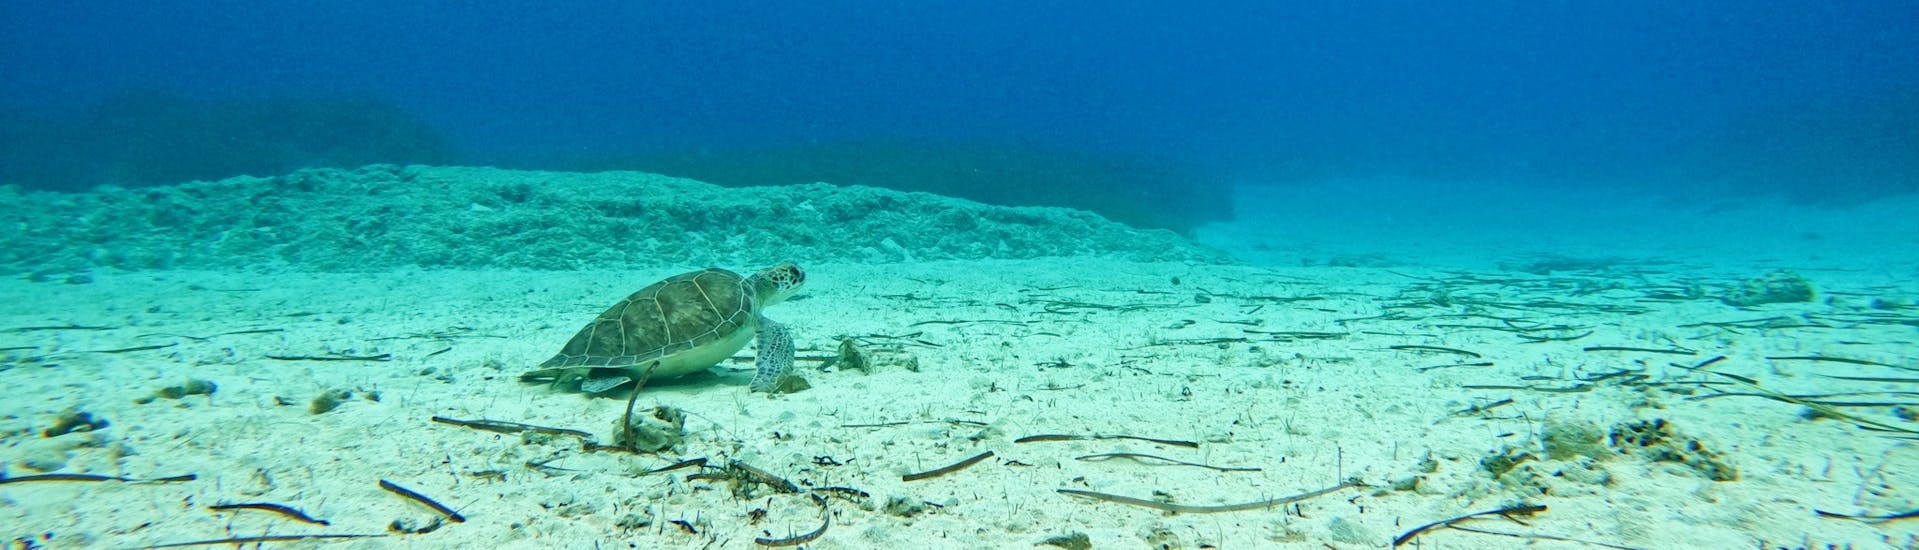 Foto van een schildpad in het water, kunnen spotten tijdens de bubblemaker cursus.